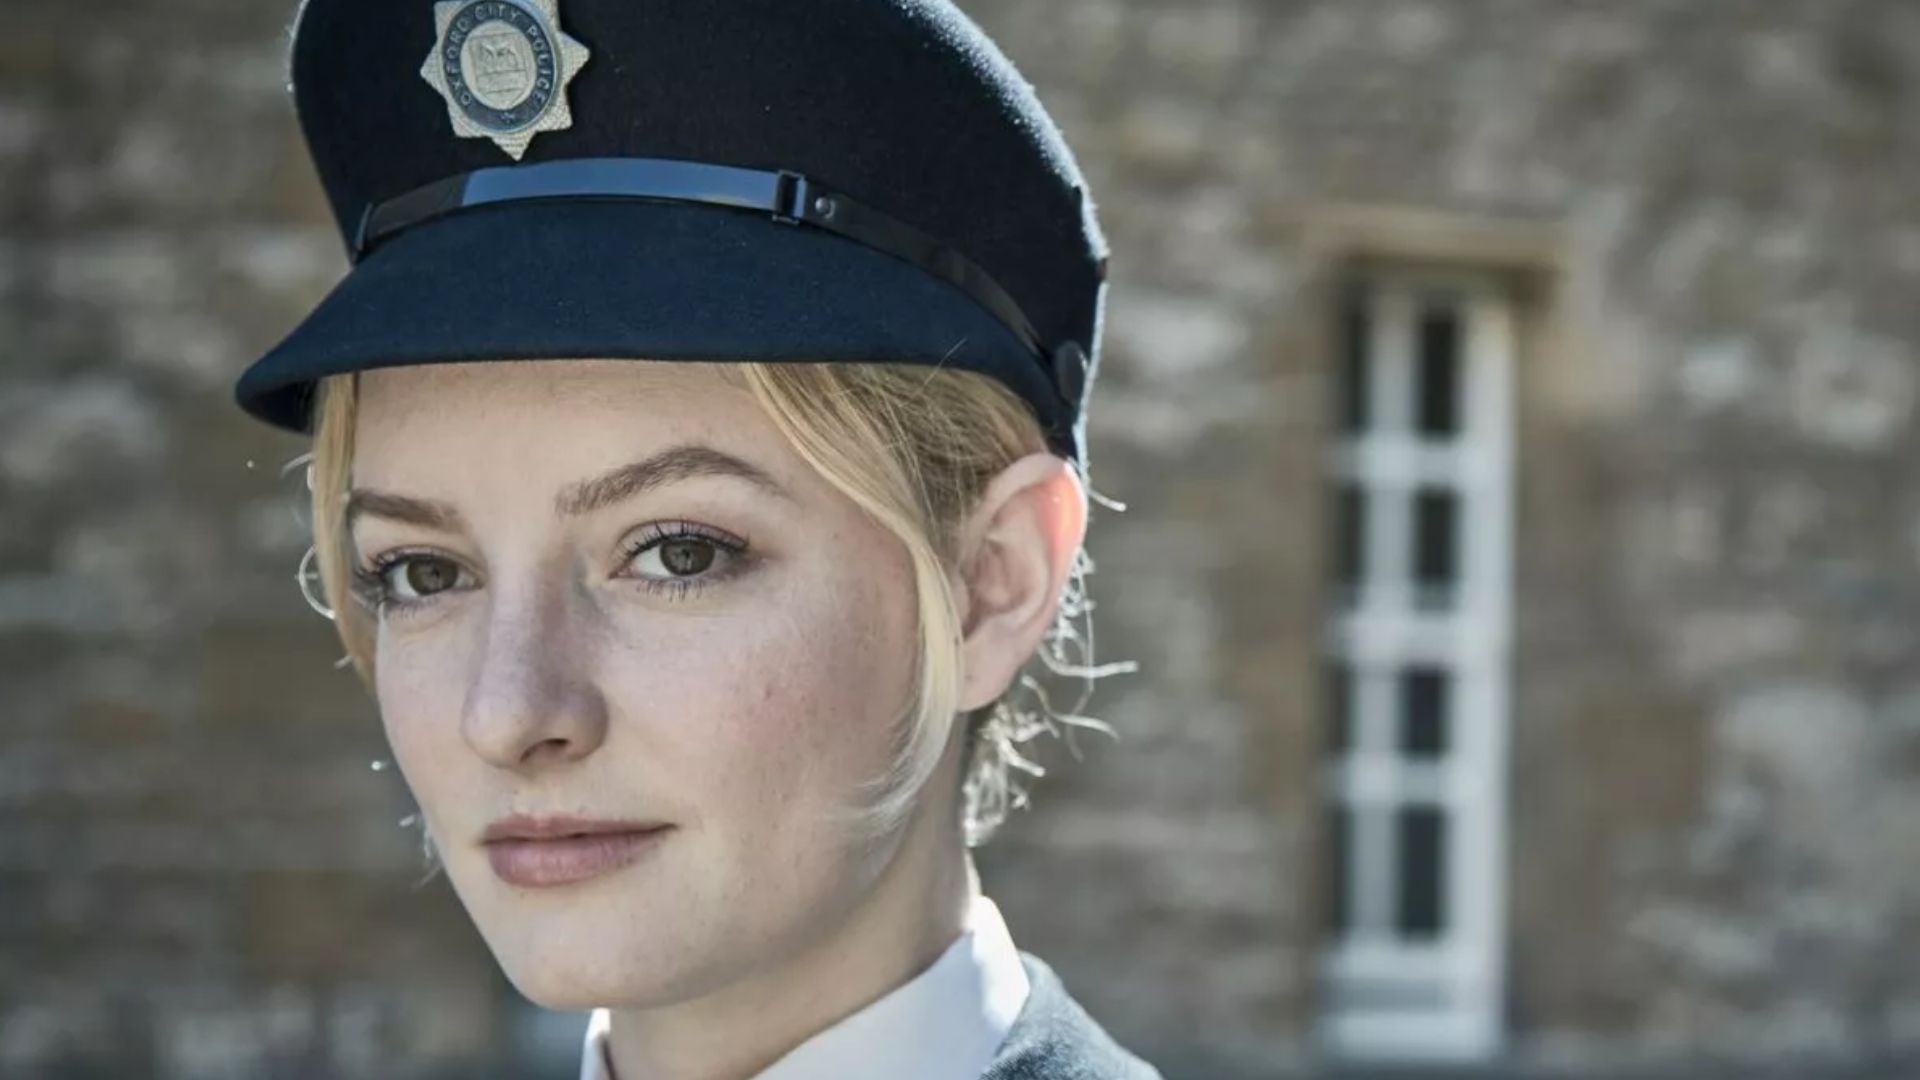 Dakota Blue Richards In Police Cap